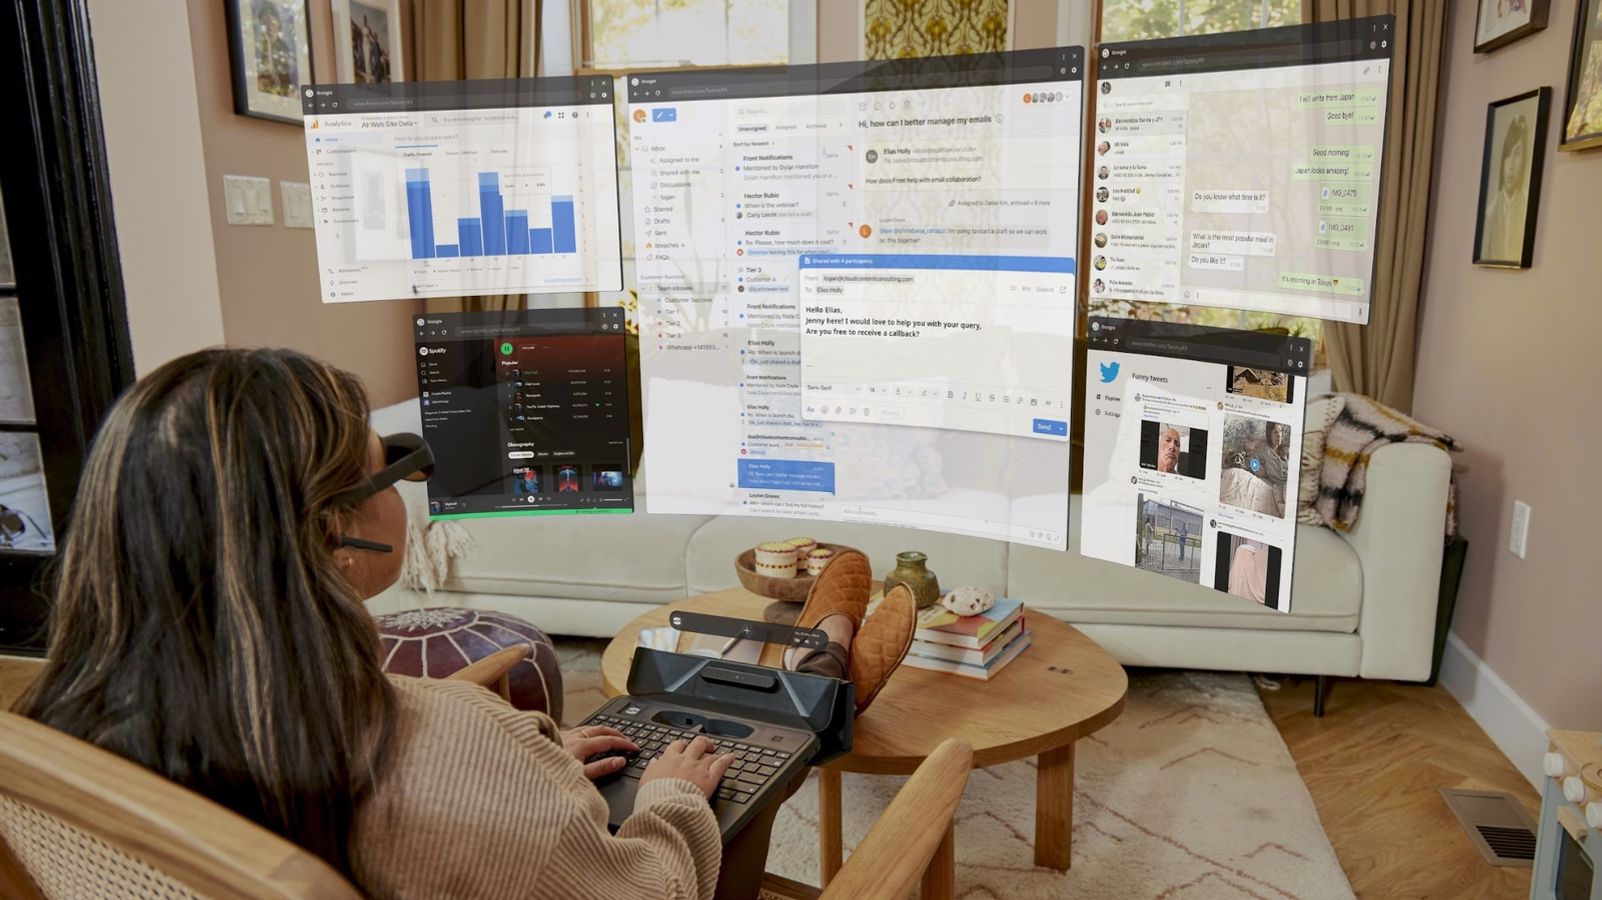 Brille statt Bildschirm: Dieser Entwickler schaffte seine vier Monitore ab  und arbeitet jetzt mit einer AR-Brille - Business Insider